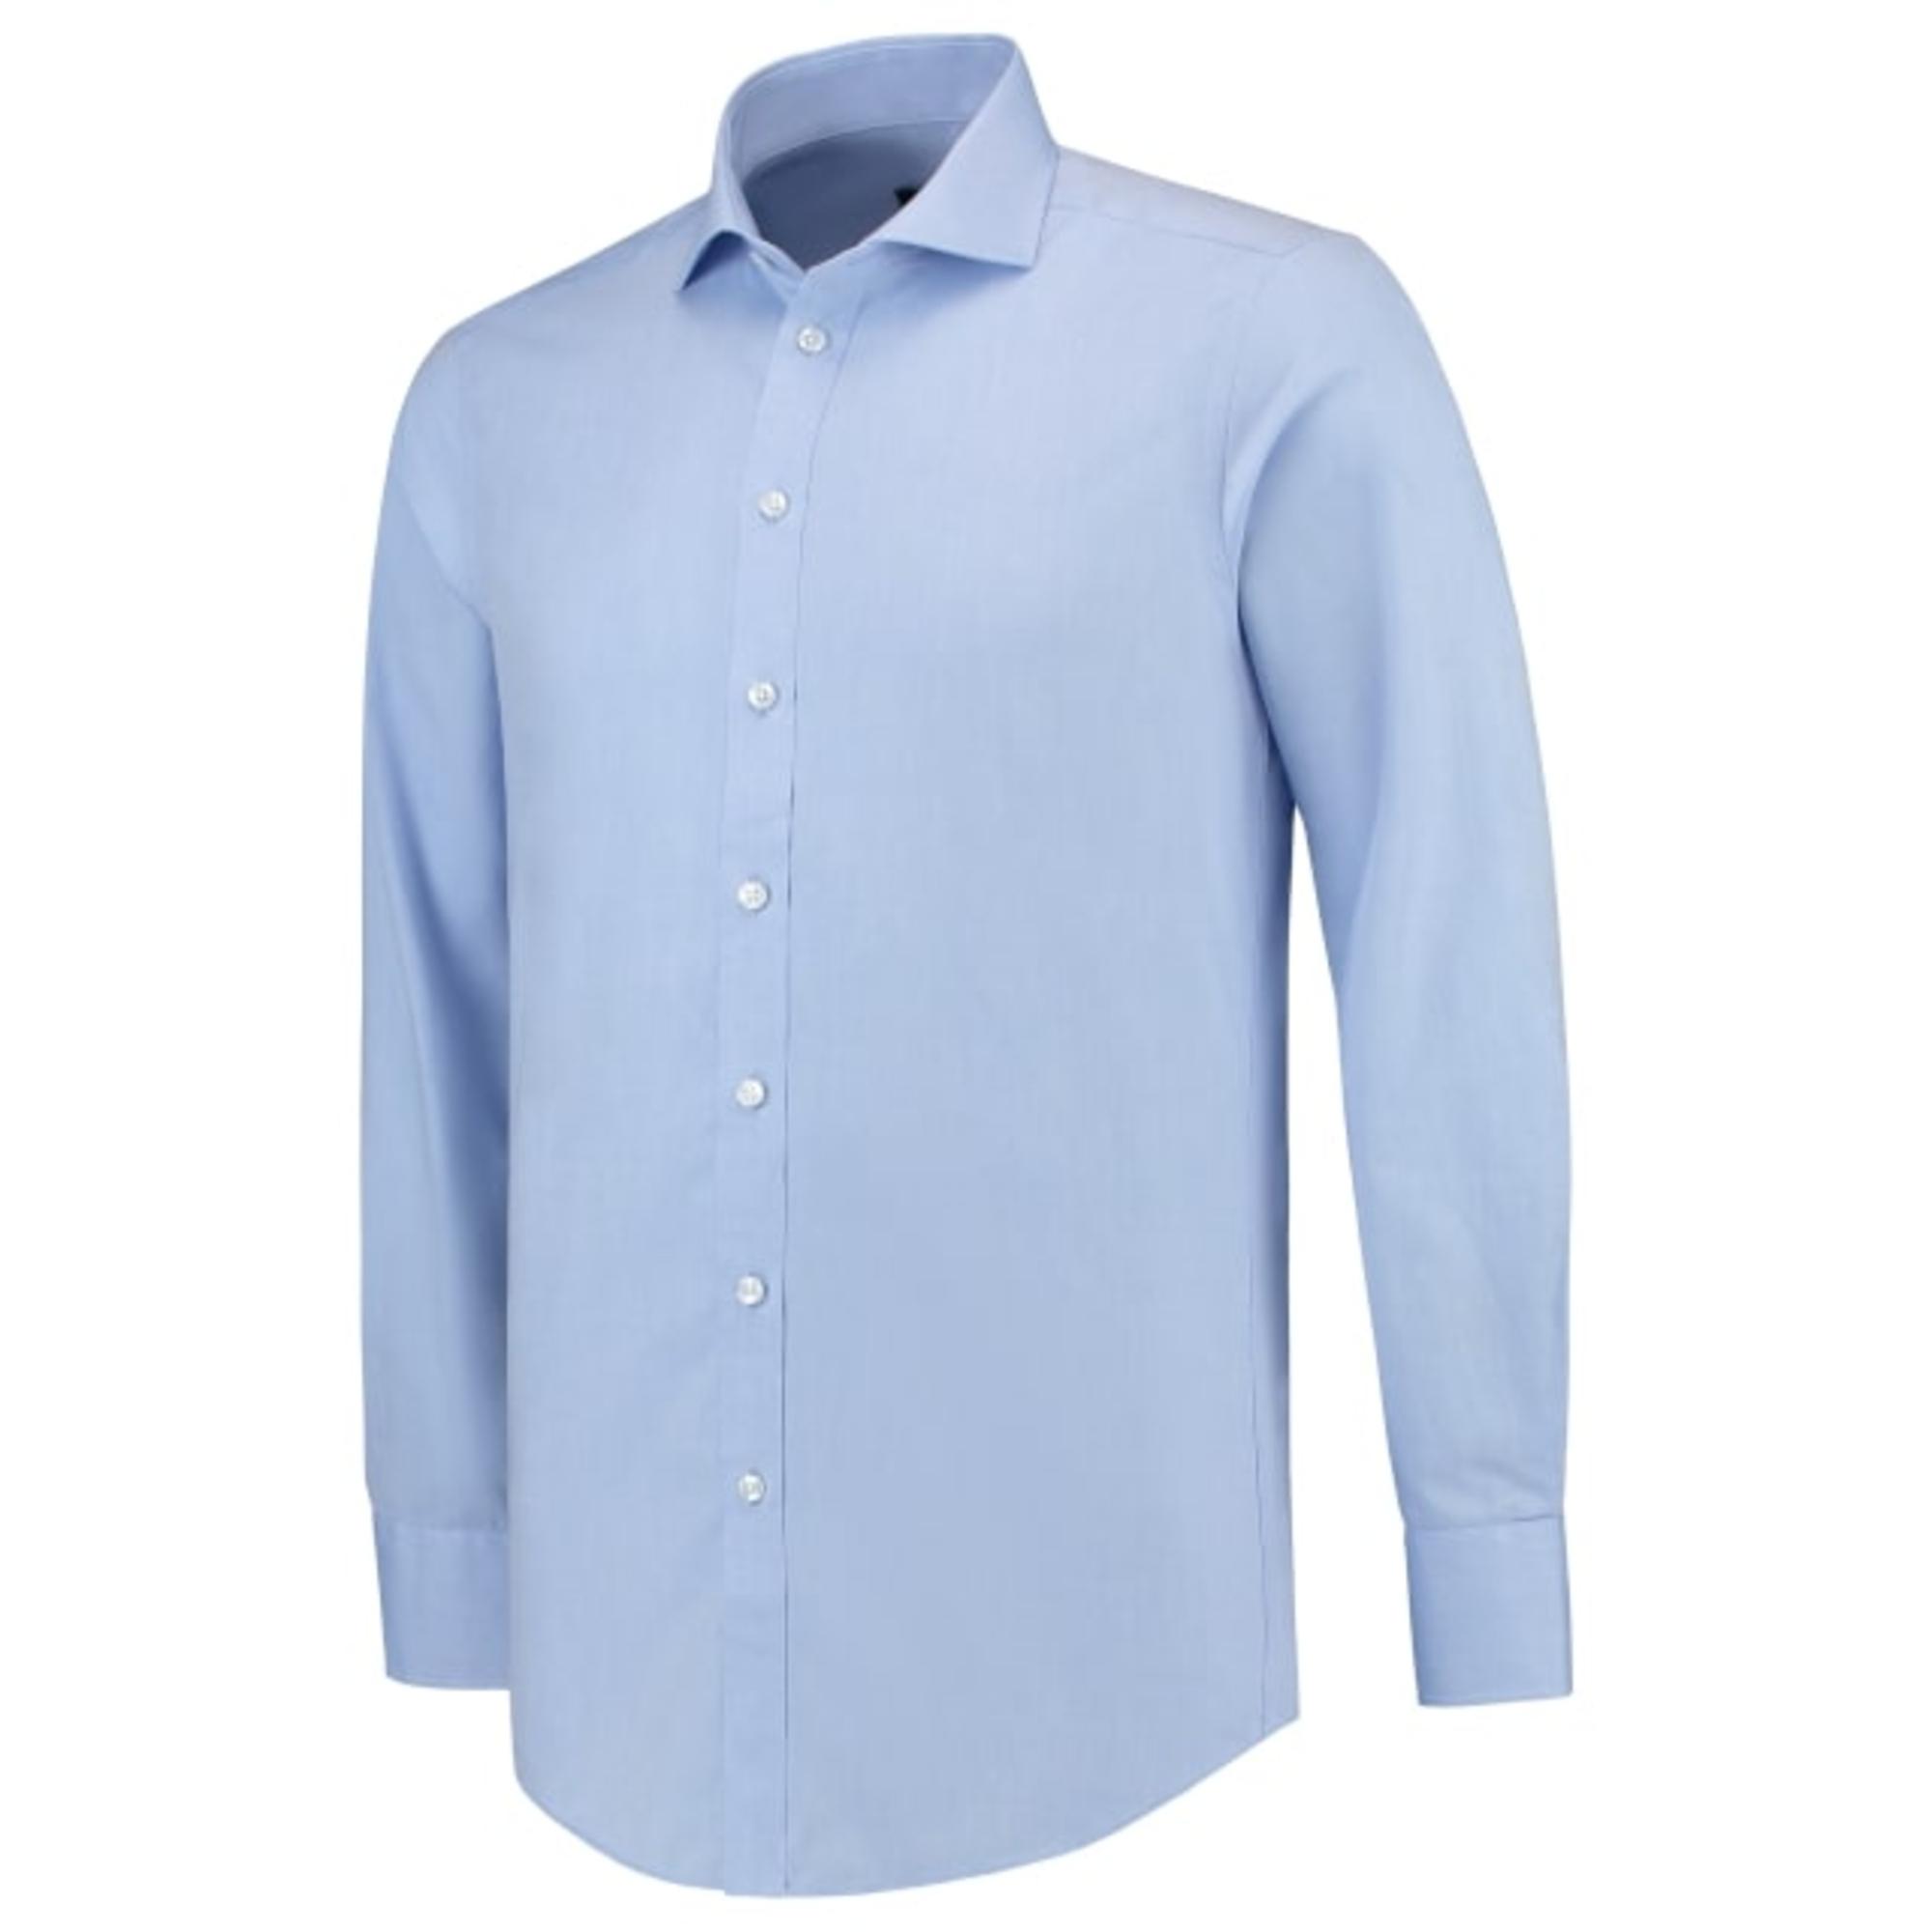 Cămaşă pentru bărbaţi Fitted Shirt T21 blue 36-38